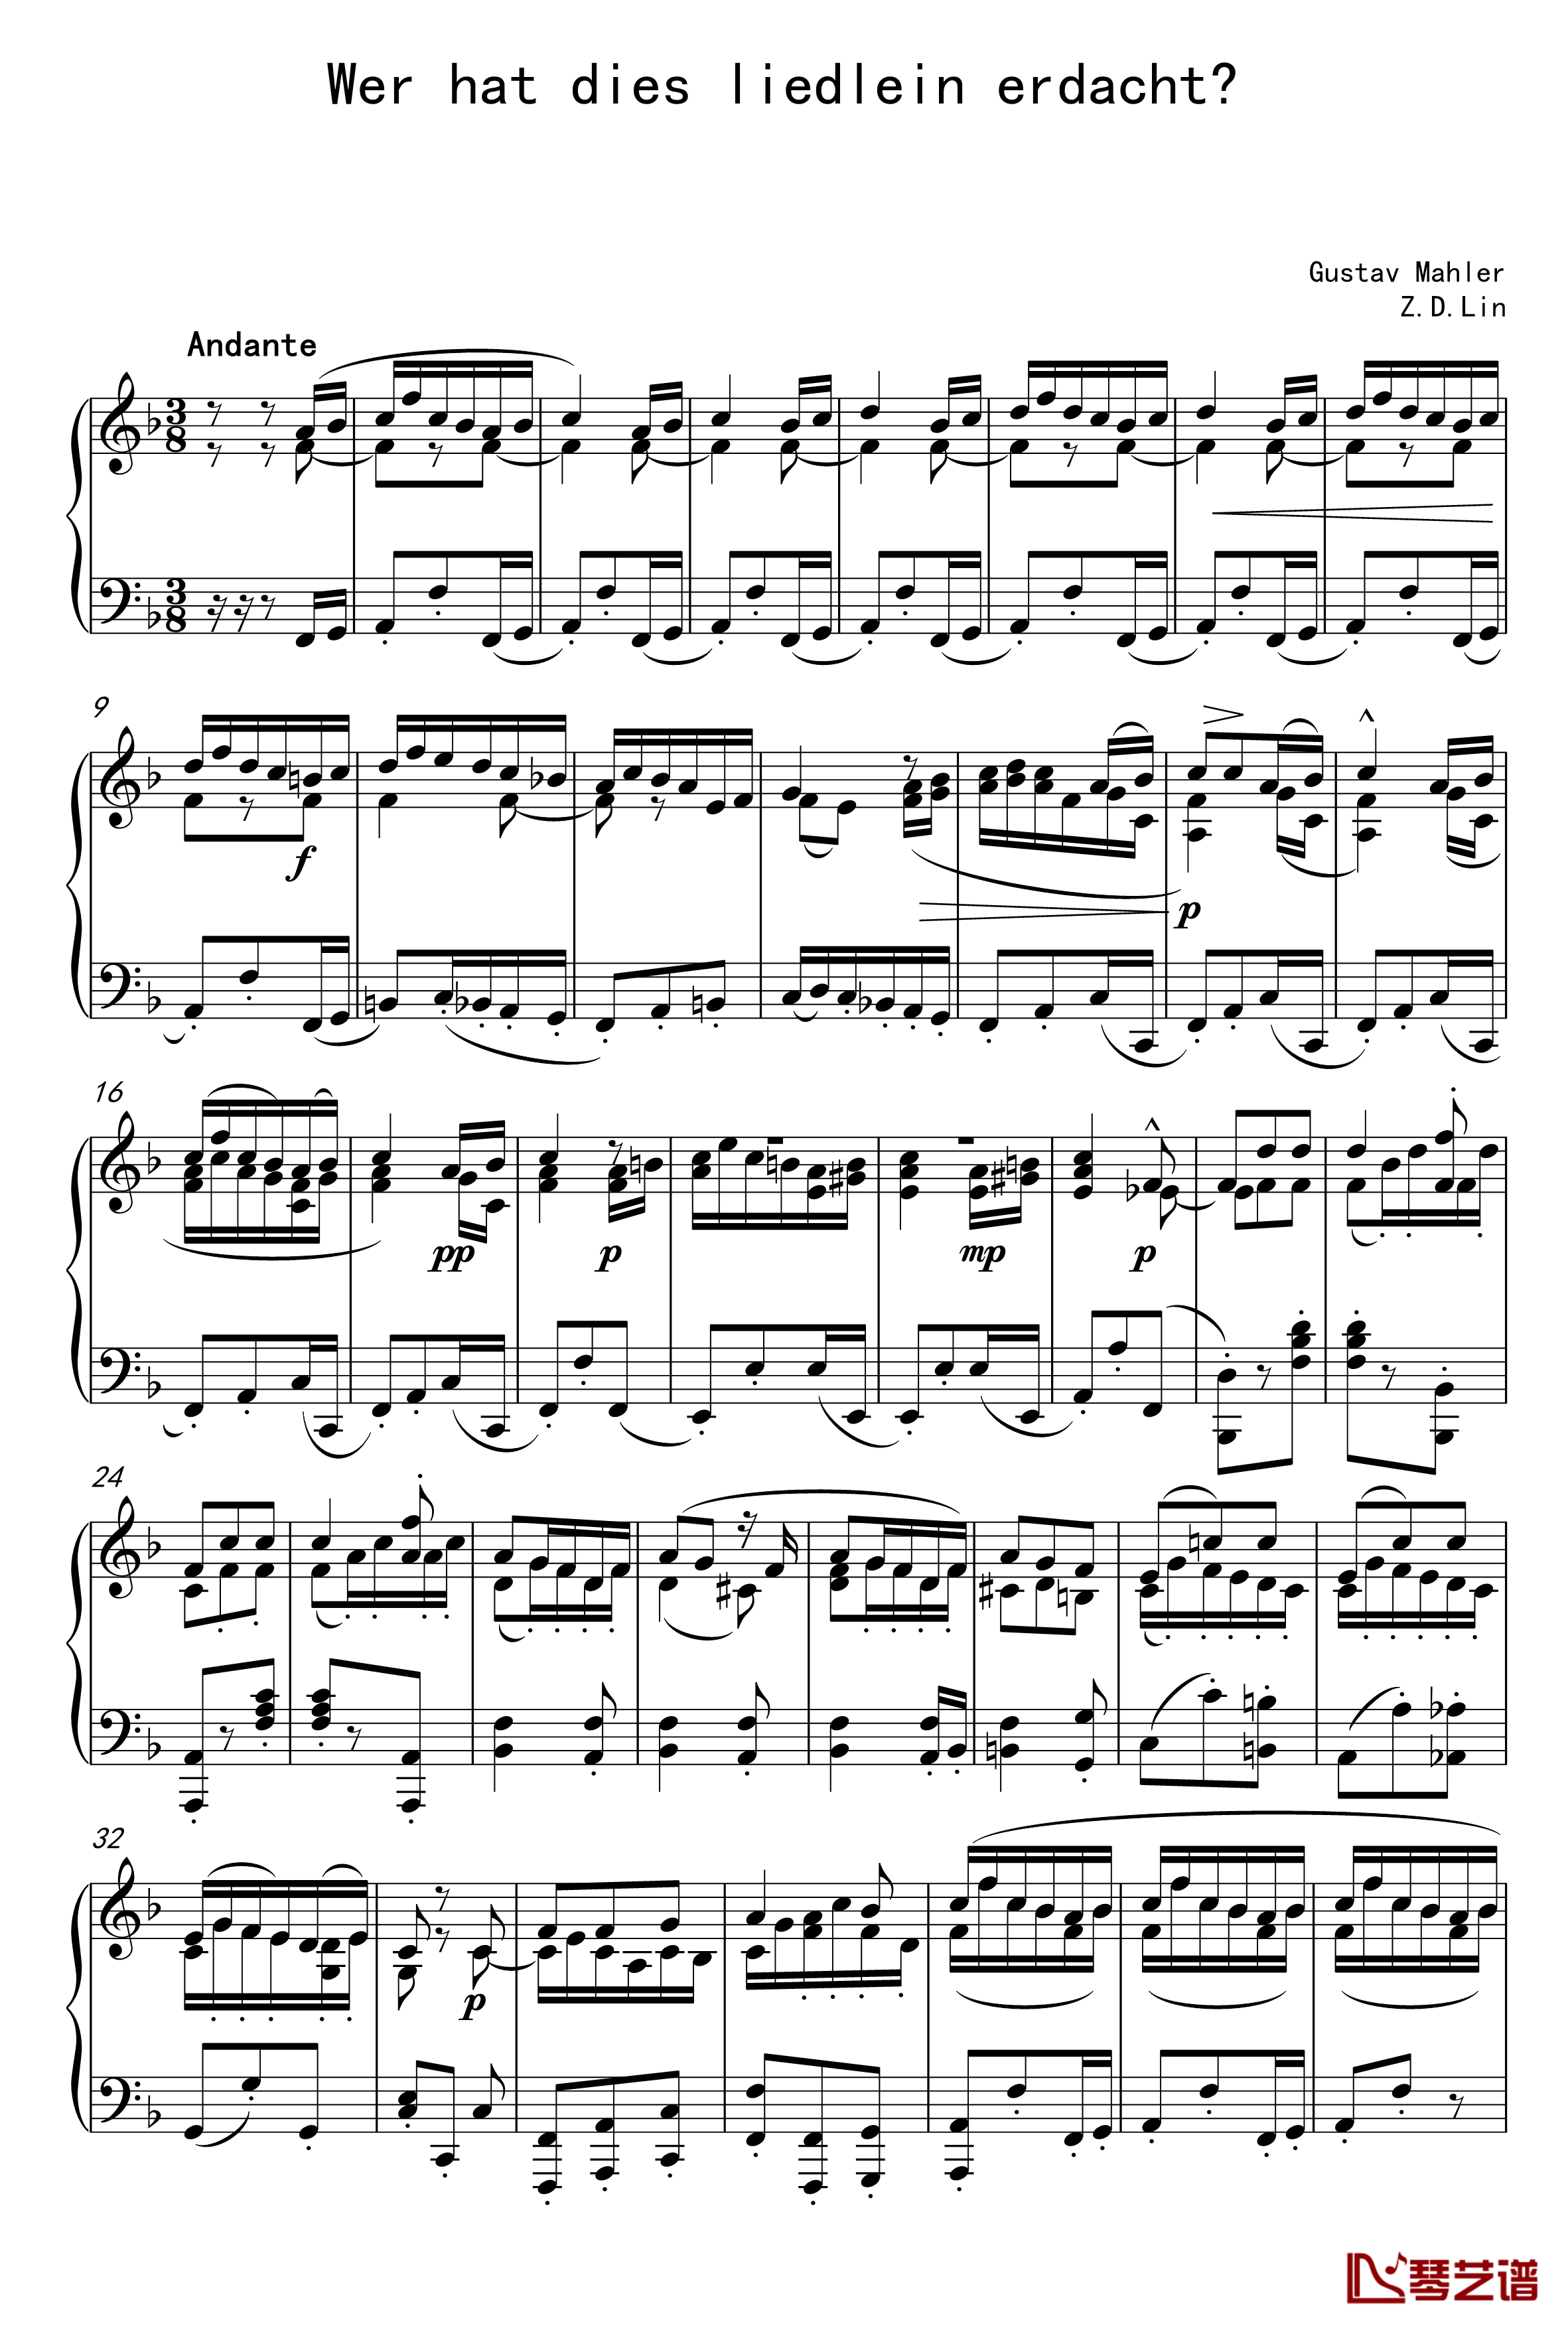 谁作出这首甜蜜的小曲钢琴谱-马勒-Z.D.Lin1